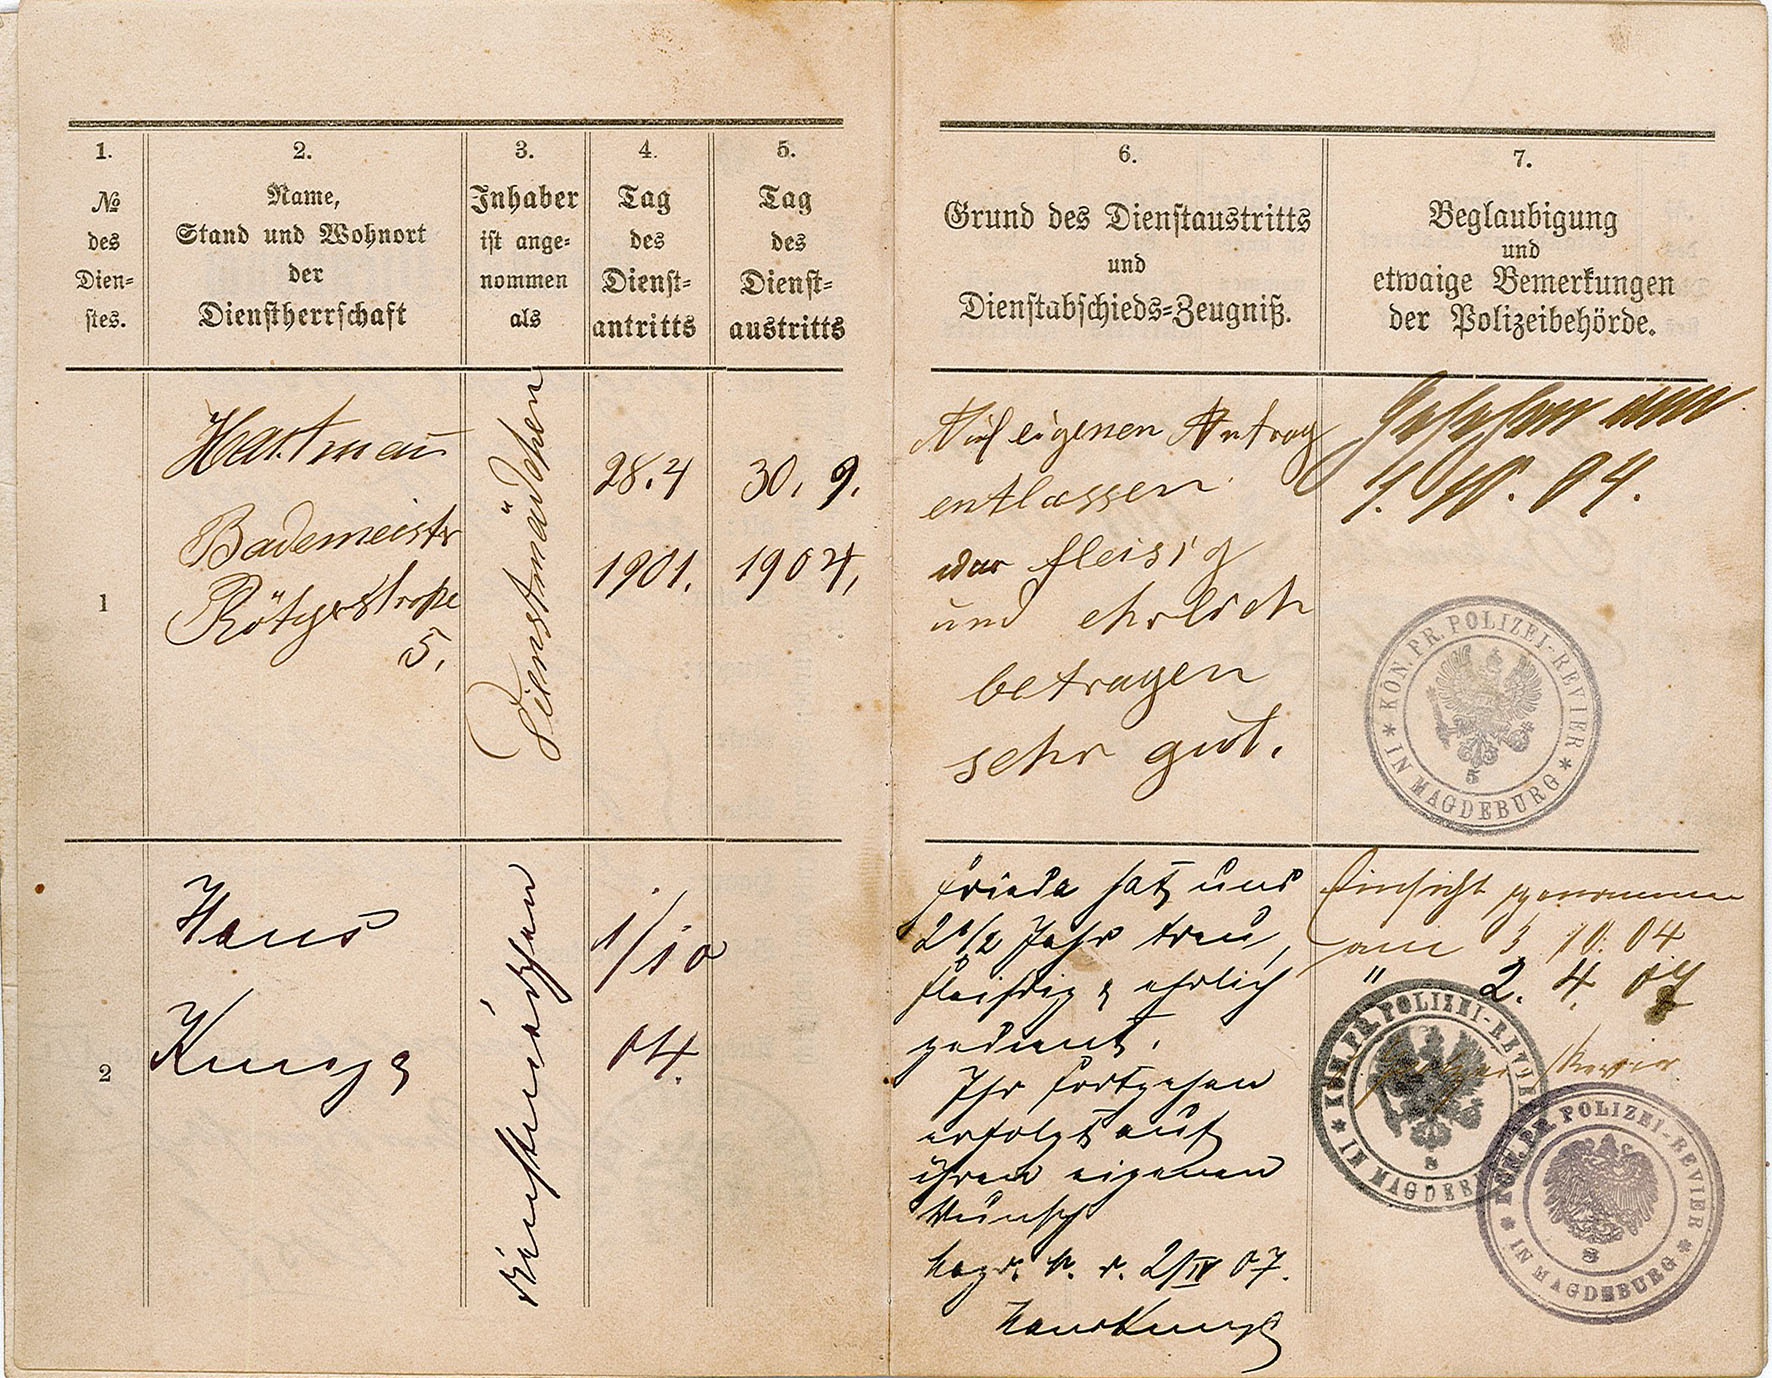 Gesinde-Dienstbuch von Friederike Görsch (Museum Wolmirstedt RR-F)